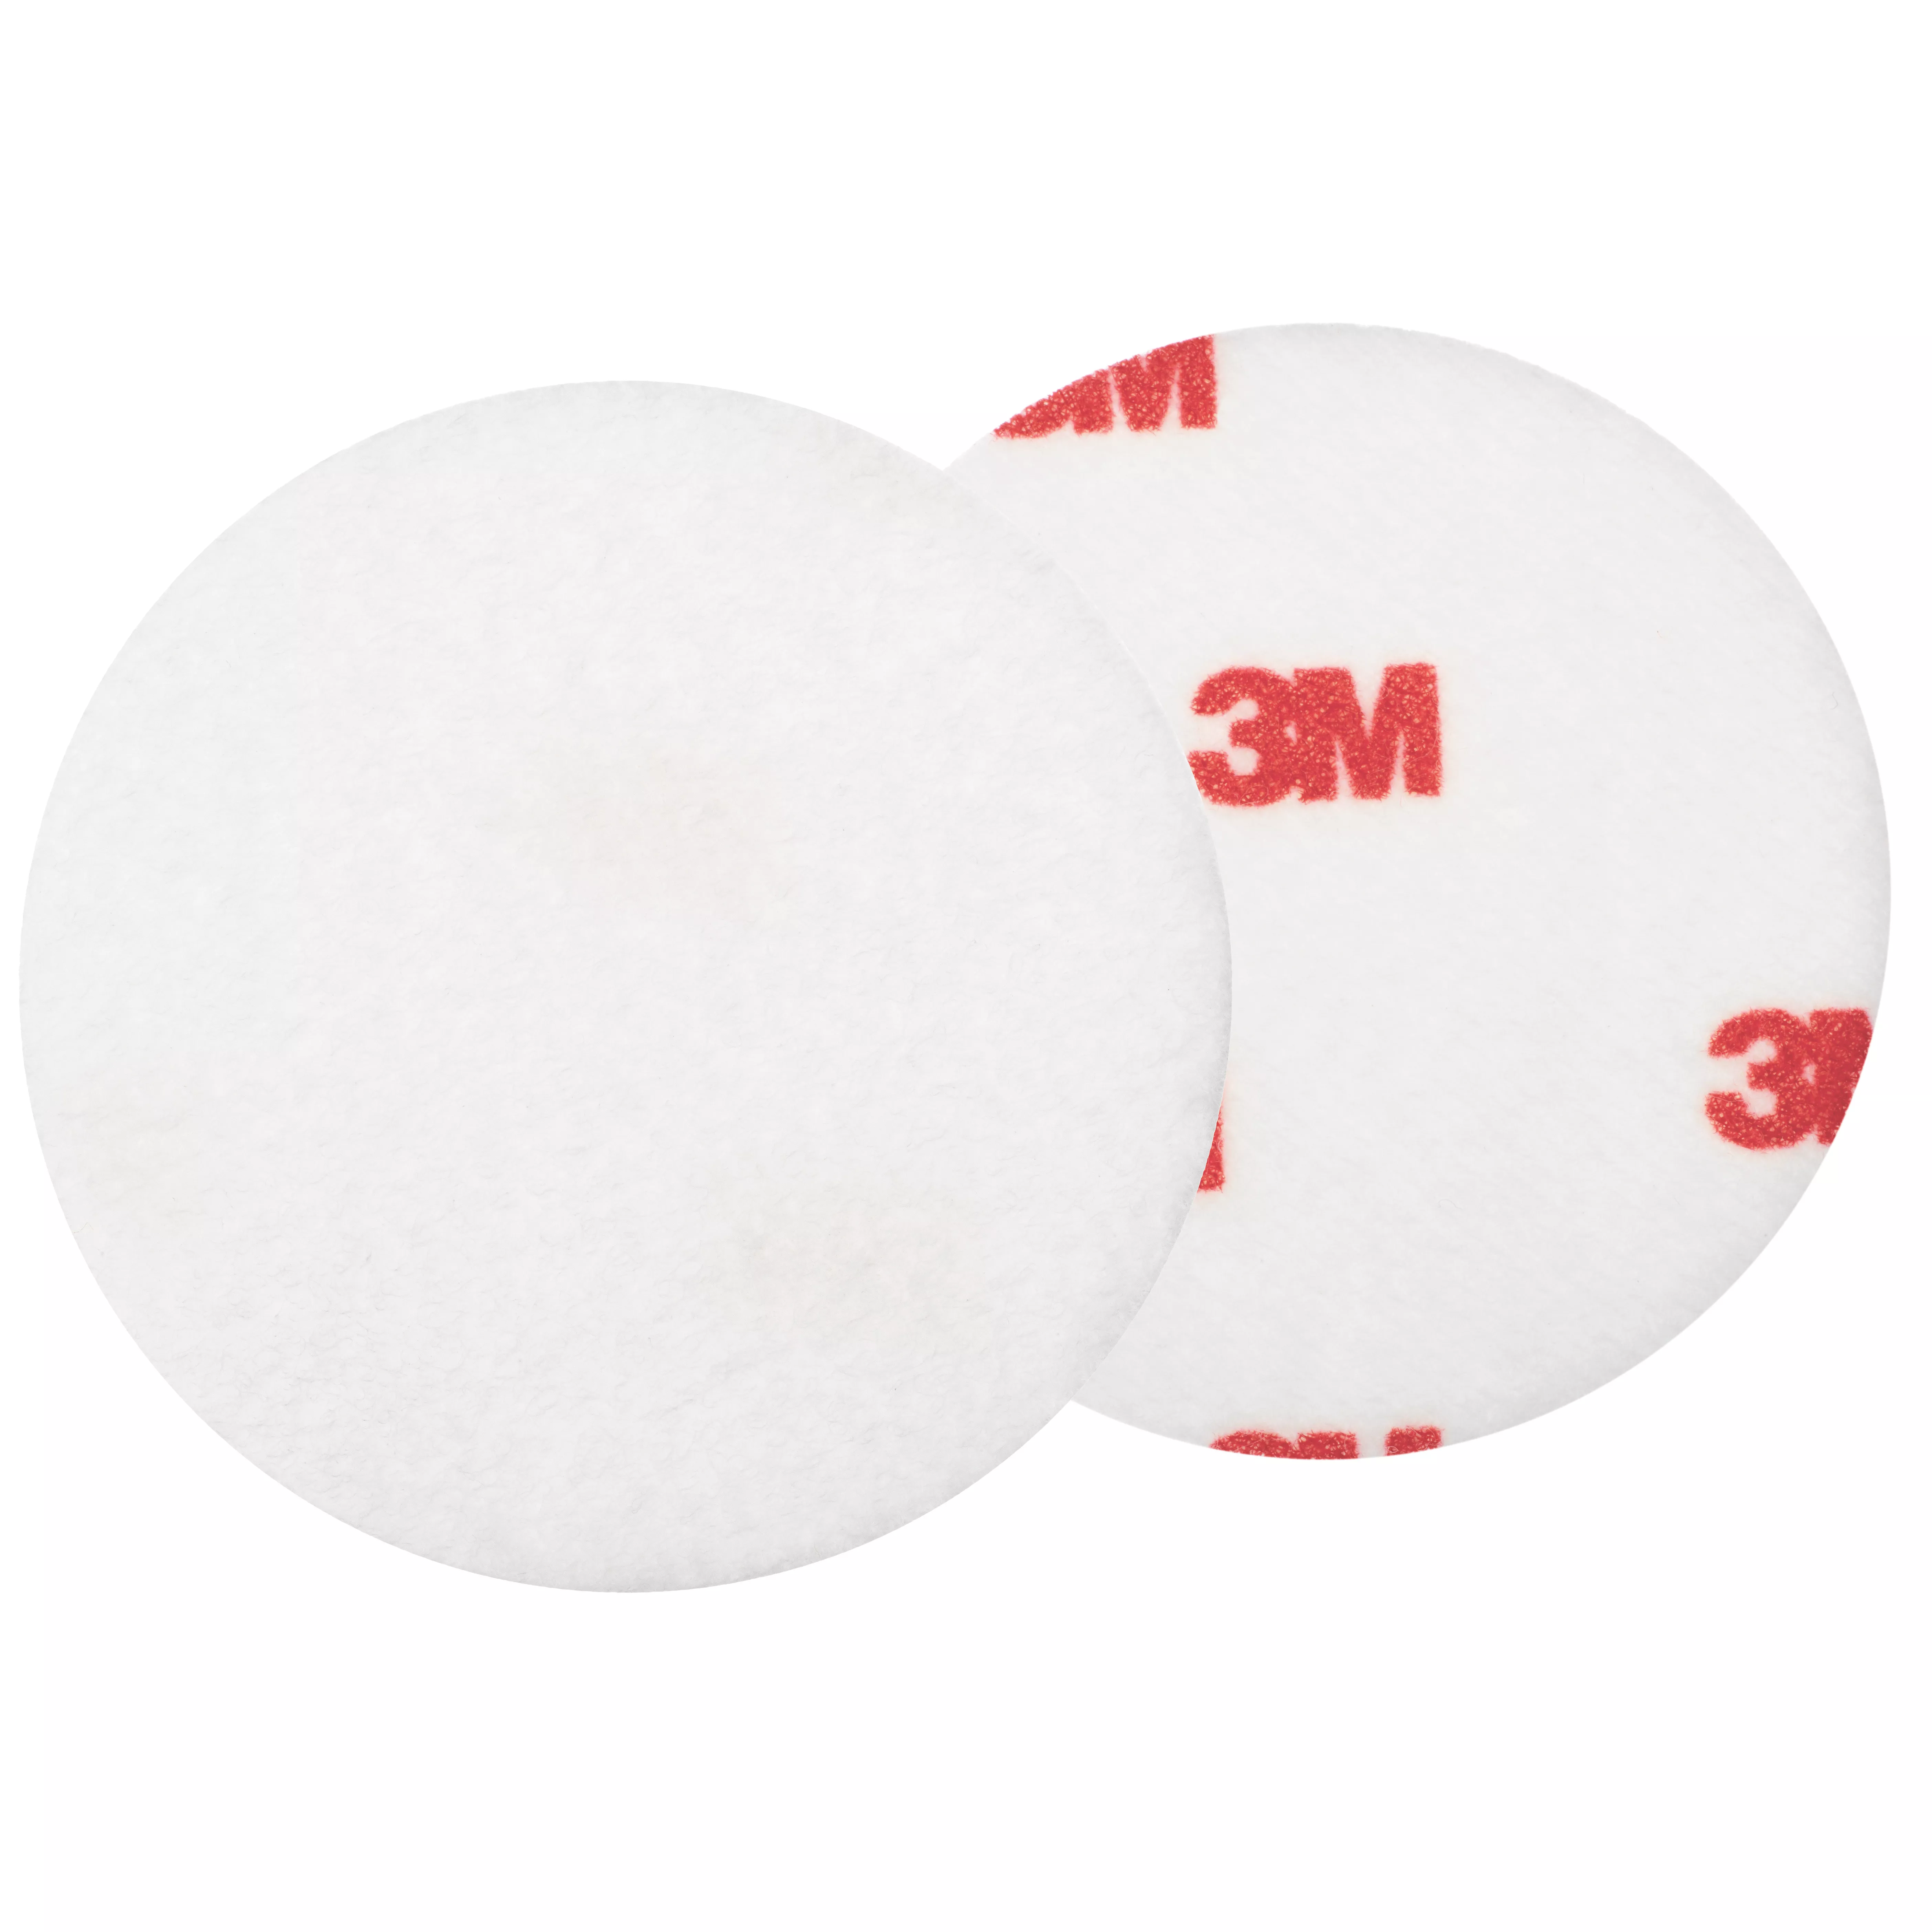 3M™ Finesse-it™ Felt Buffing Pad, 09357, 3 in, Red Foam Logo White Loop, 50/Pac, 500 ea/Case